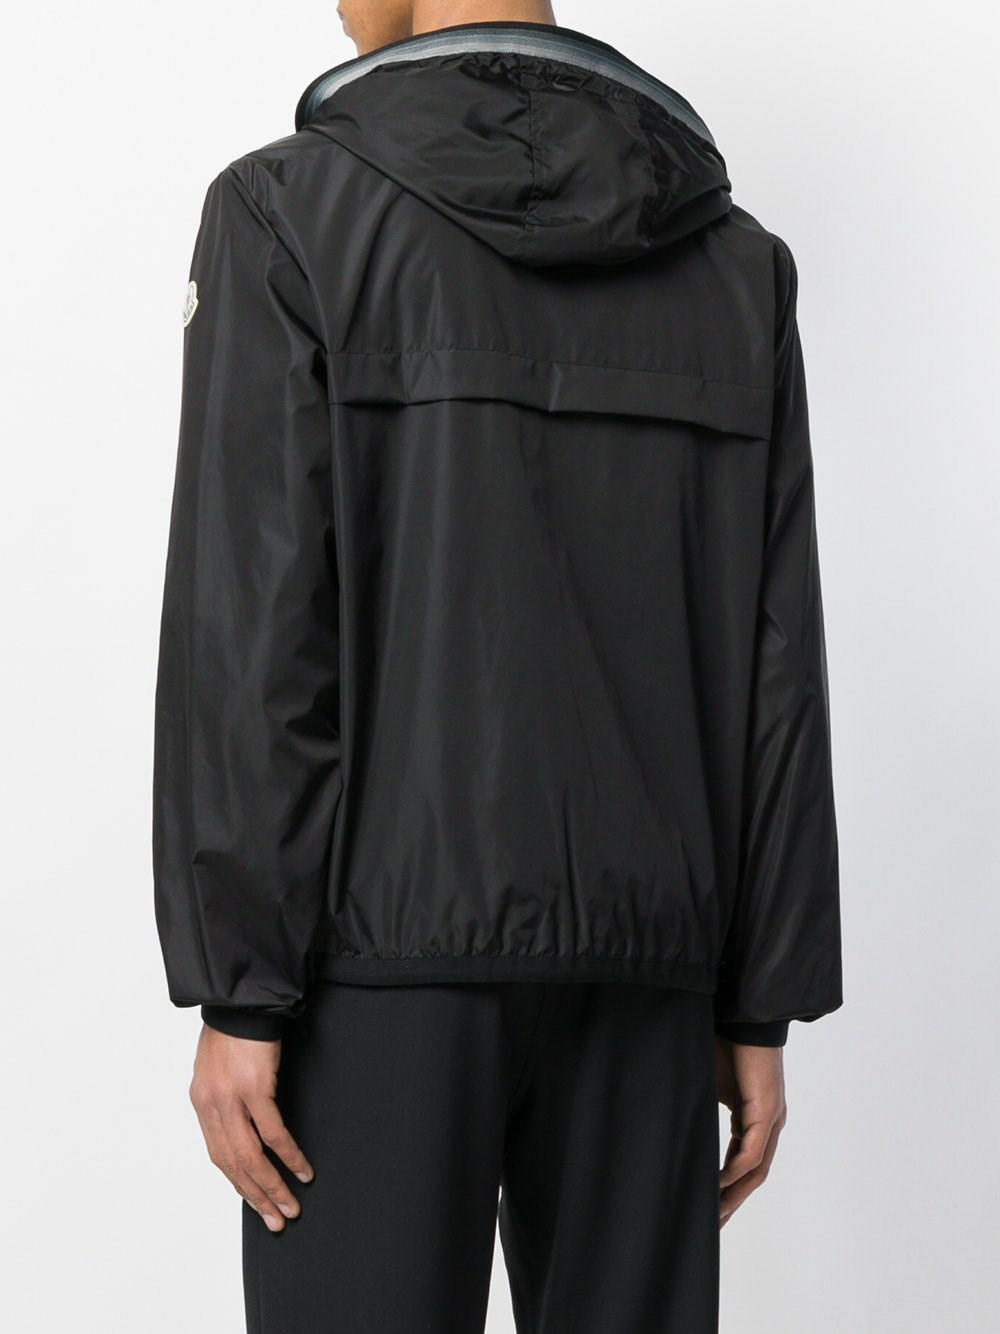 moncler anton jacket black